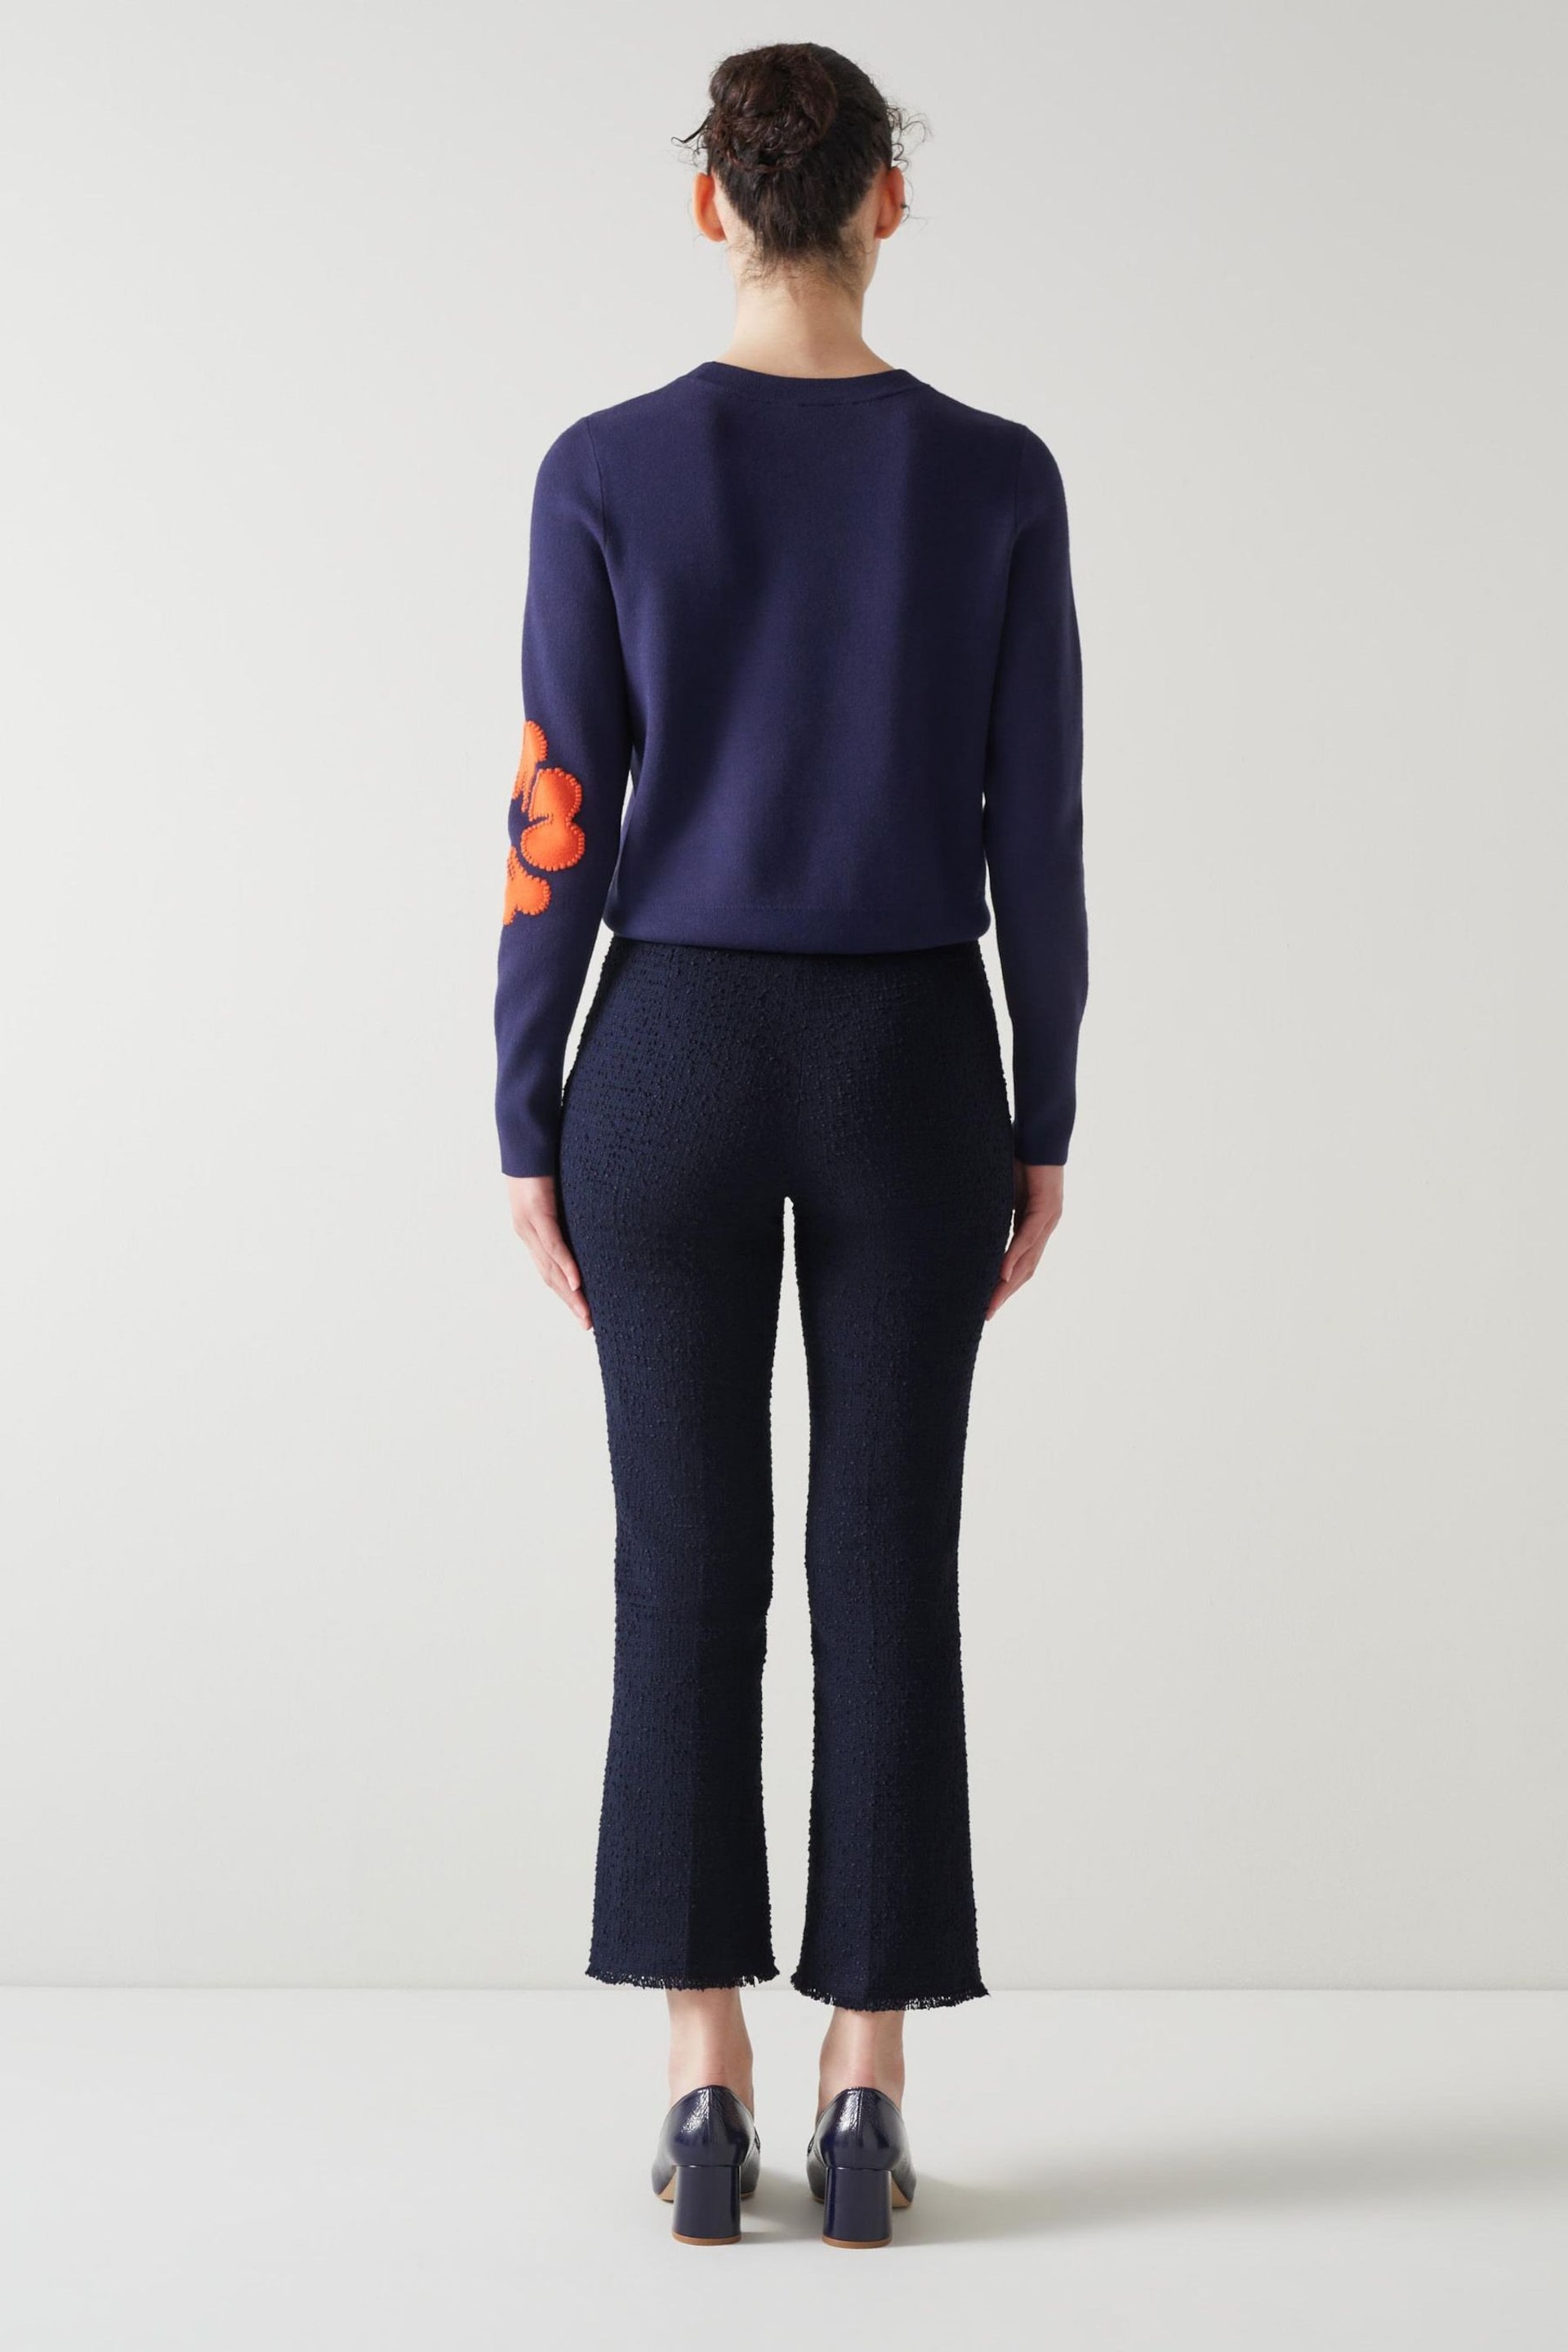 LK Bennett  Alexa Cotton Italian Tweed Trousers - Image 2 of 4